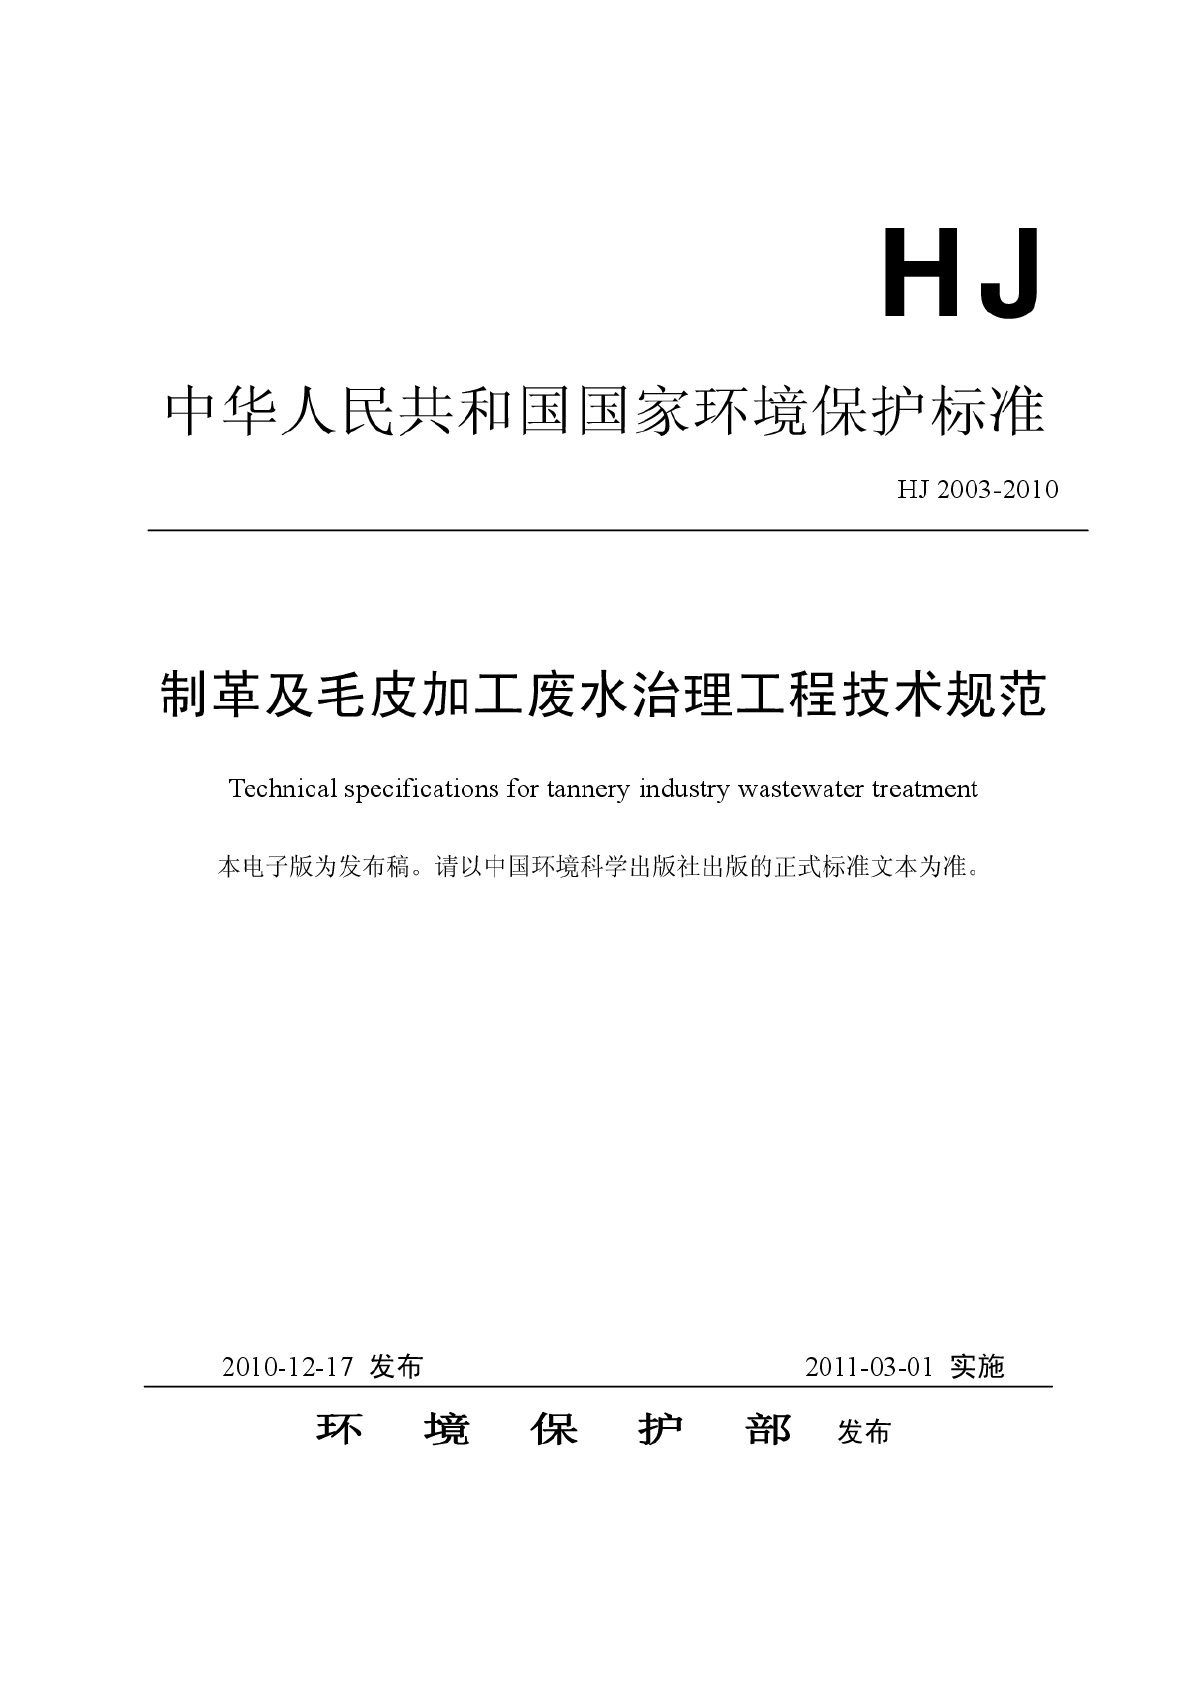 制革及毛皮加工废水治理工程技术规范（HJ+2003-2010）.pdf-图一